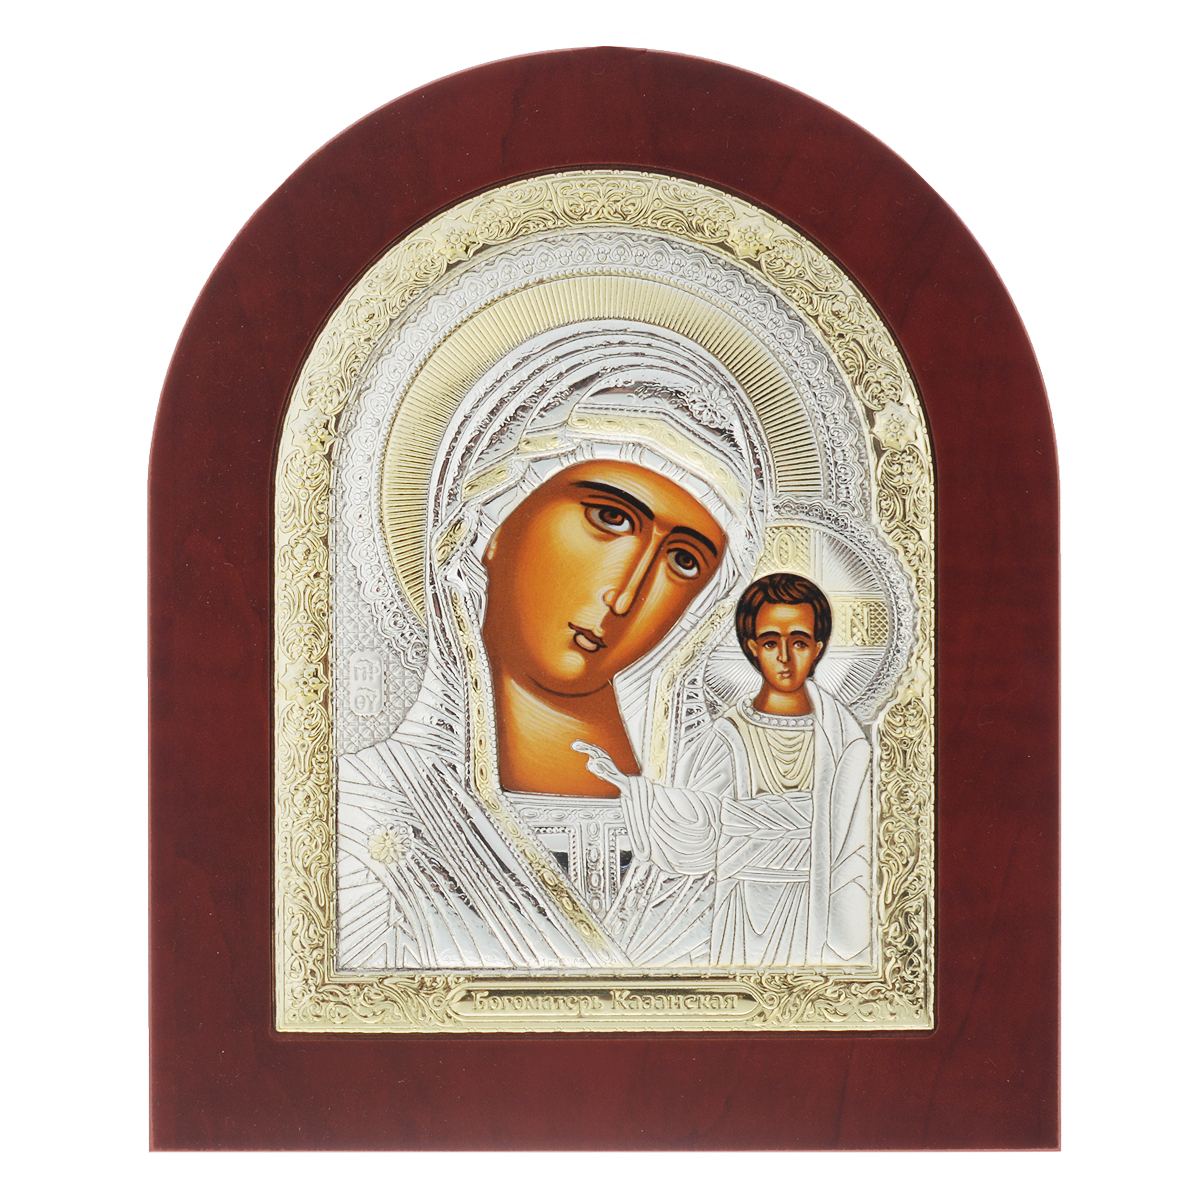 Икона Казанской Божьей Матери, 19 см х 15,5 см